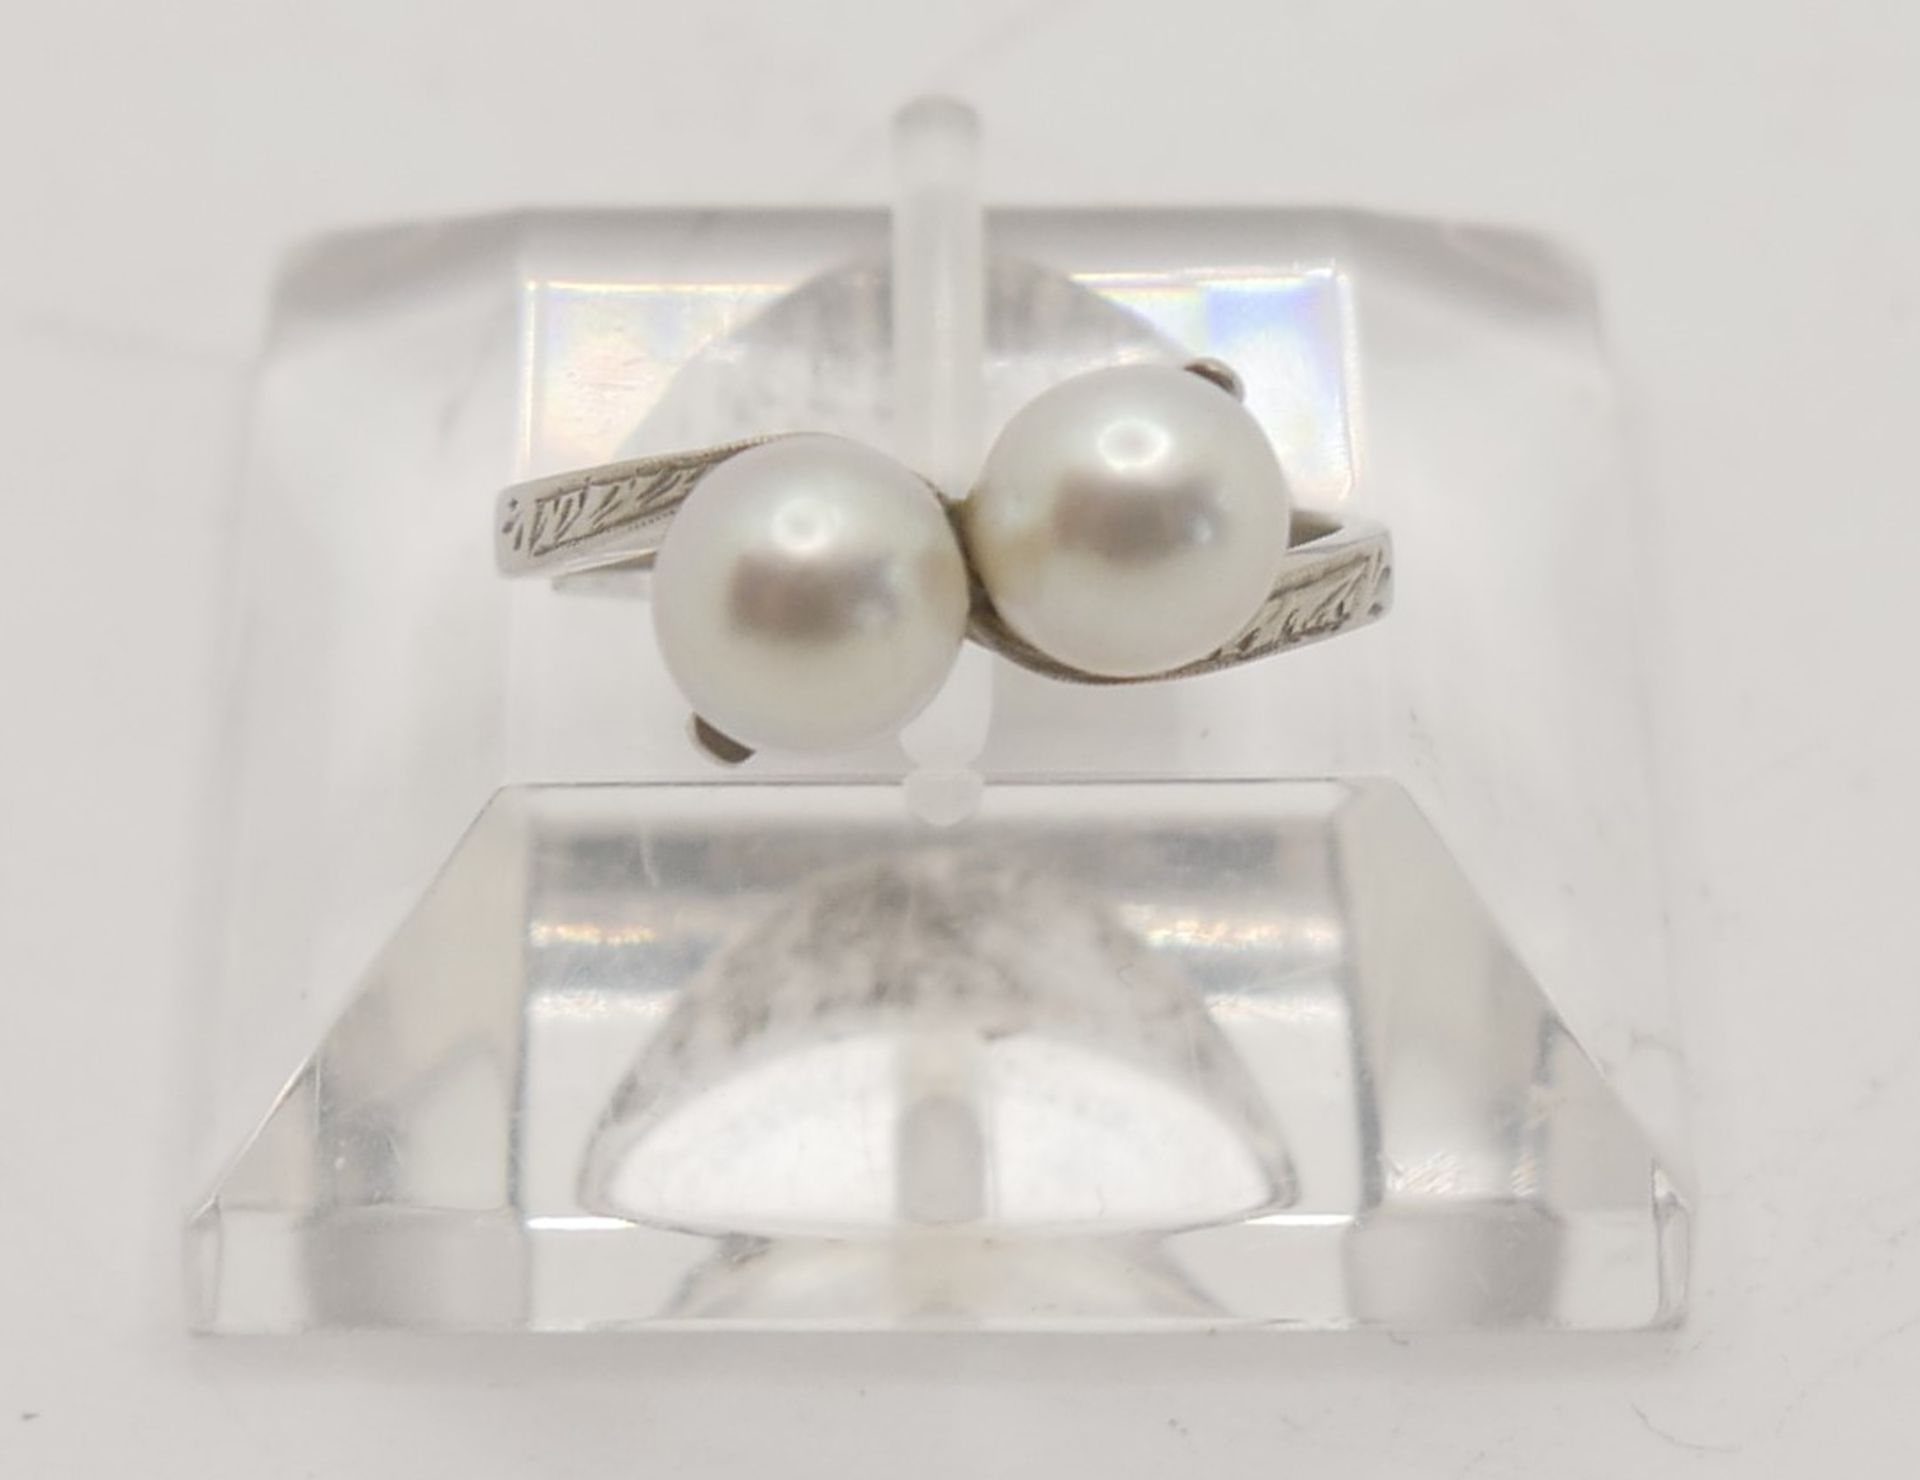 Platinring mit 2 Perlen besetzt, Ringgröße 52